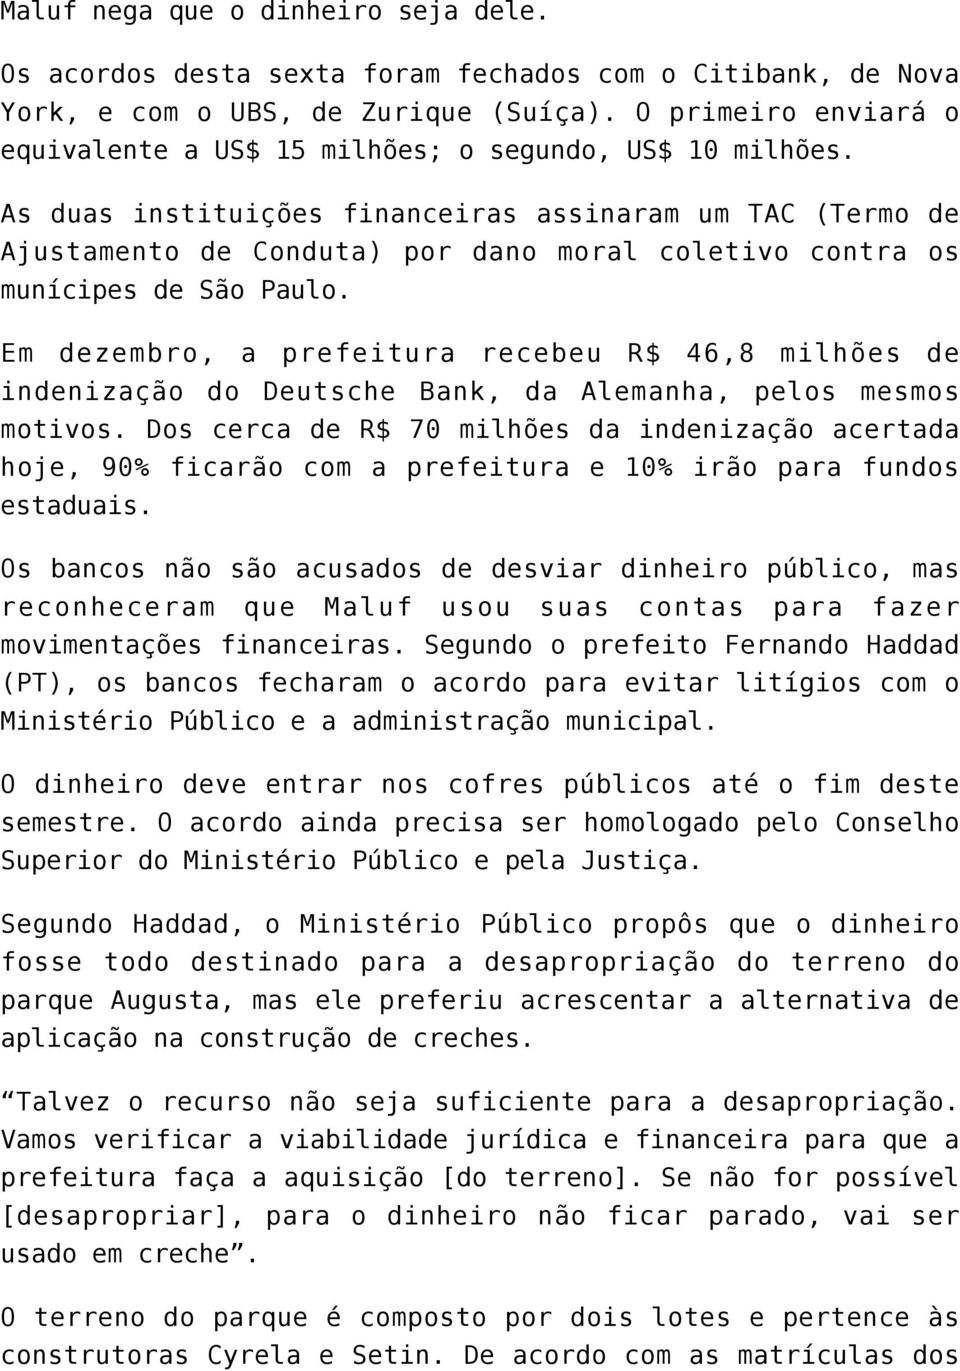 As duas instituições financeiras assinaram um TAC (Termo de Ajustamento de Conduta) por dano moral coletivo contra os munícipes de São Paulo.